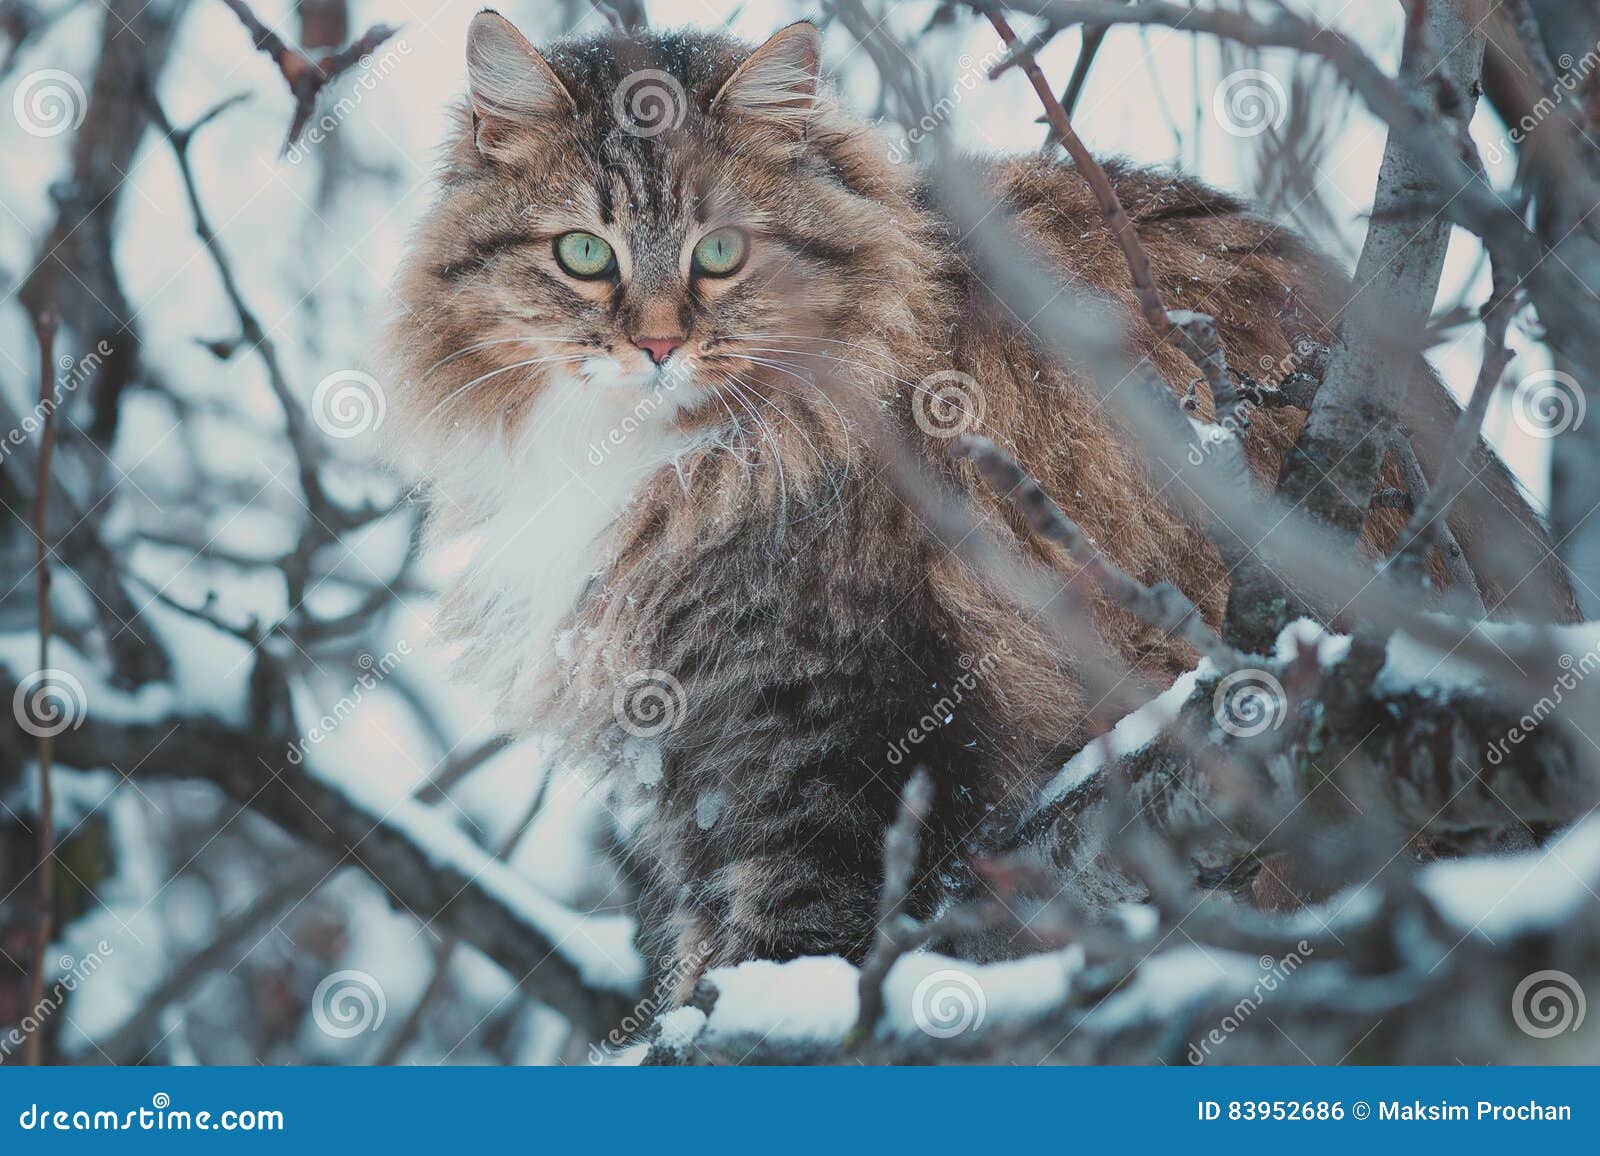 siberian tree cat